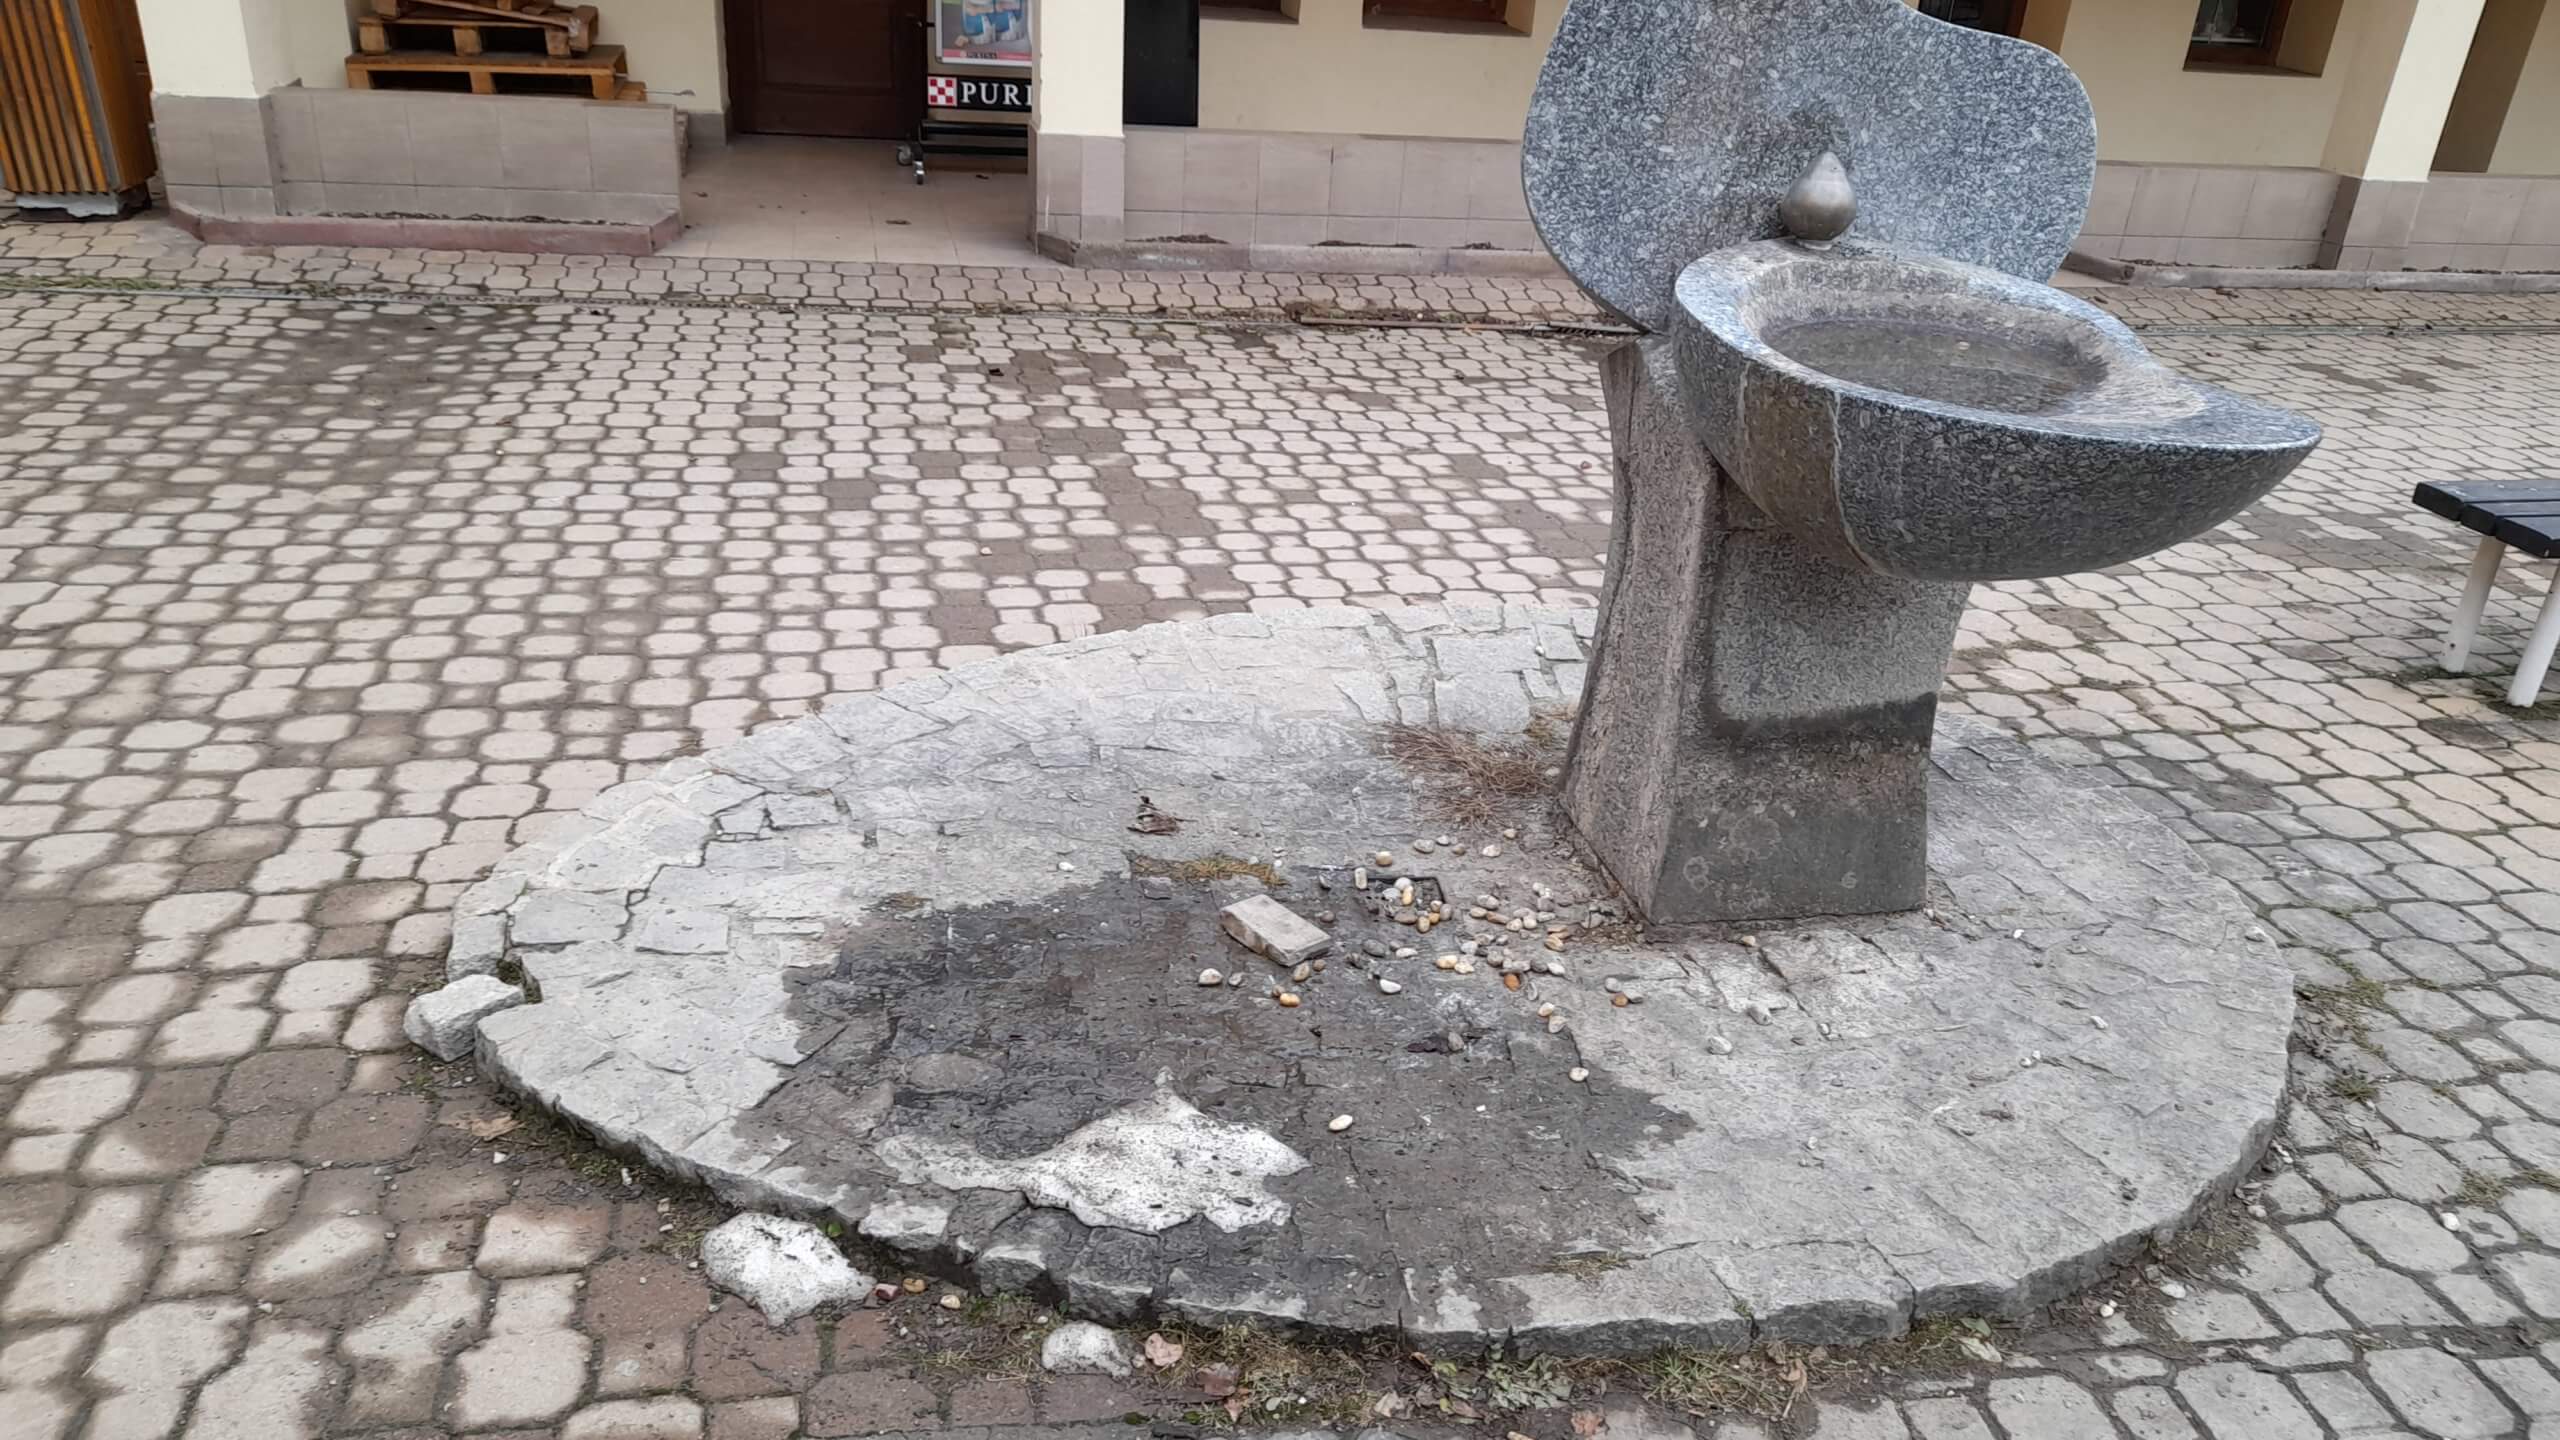 Nefunkční fontána a poškozené okolí